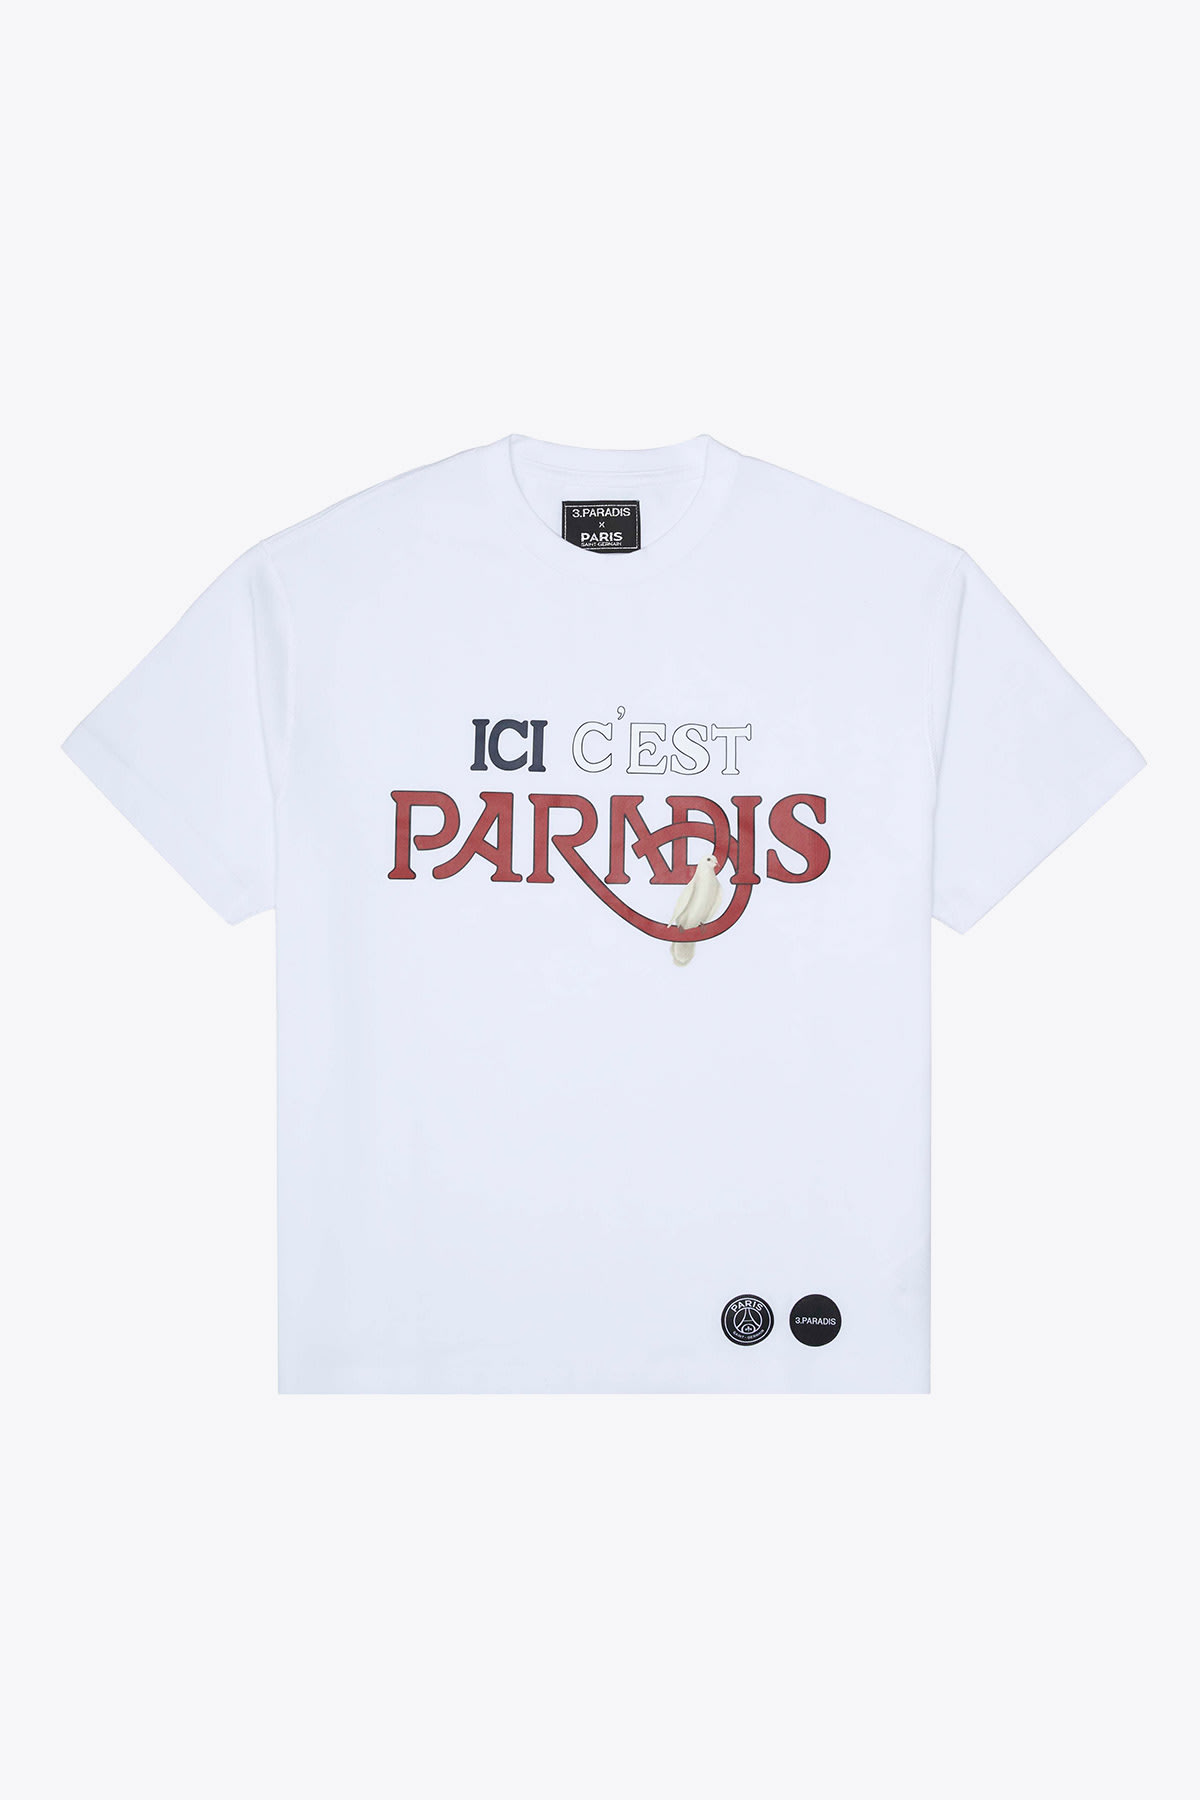 3.Paradis Ici Cest Paris T-shirt PSG collab white cotton t-shirt - Ici Cest Paris T-shirt